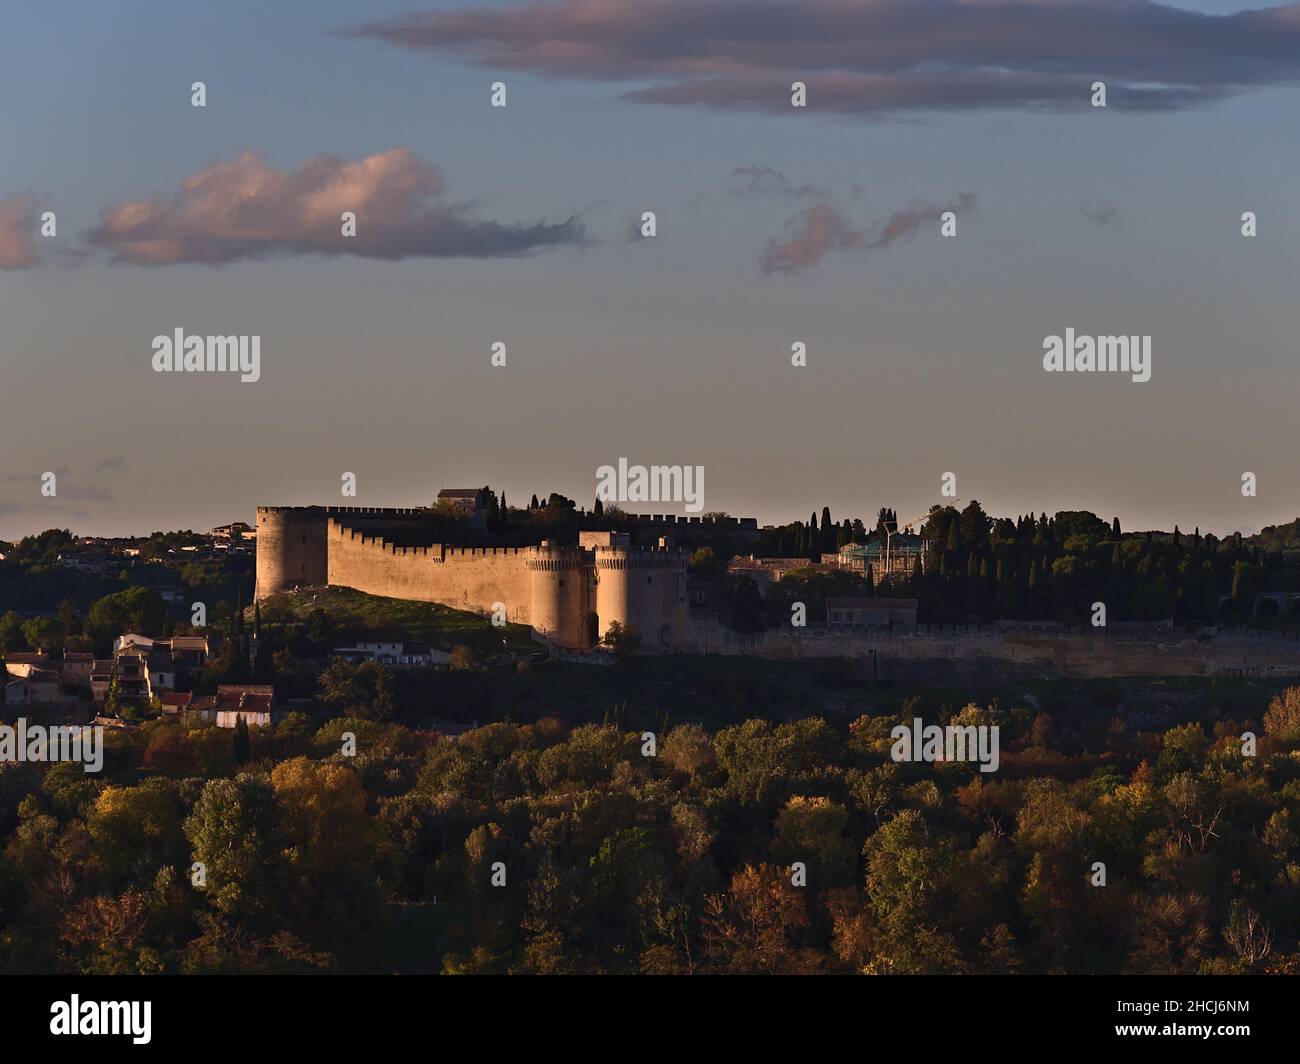 Ansicht der mittelalterlichen Festung Fort Saint-Andre (ca. 14th Jahrhundert) in der Abendsonne in der Herbstsaison vom Rocher des Doms in Avignon, Frankreich aus gesehen. Stockfoto